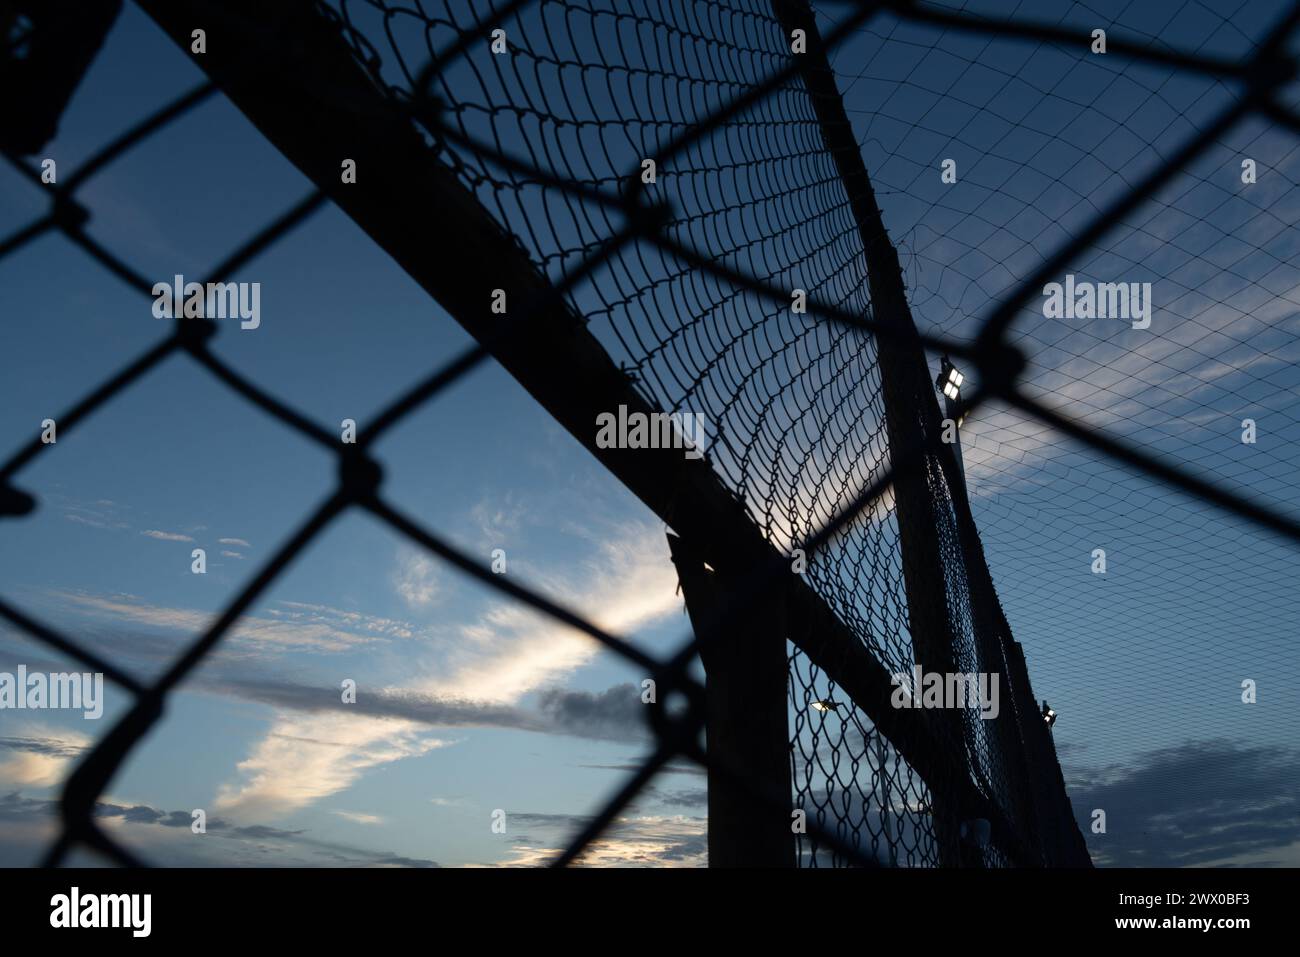 Netz und Zaun eines alten verlassenen Sportplatzes gegen Sonnenuntergang. Sportausrüstung. Stockfoto